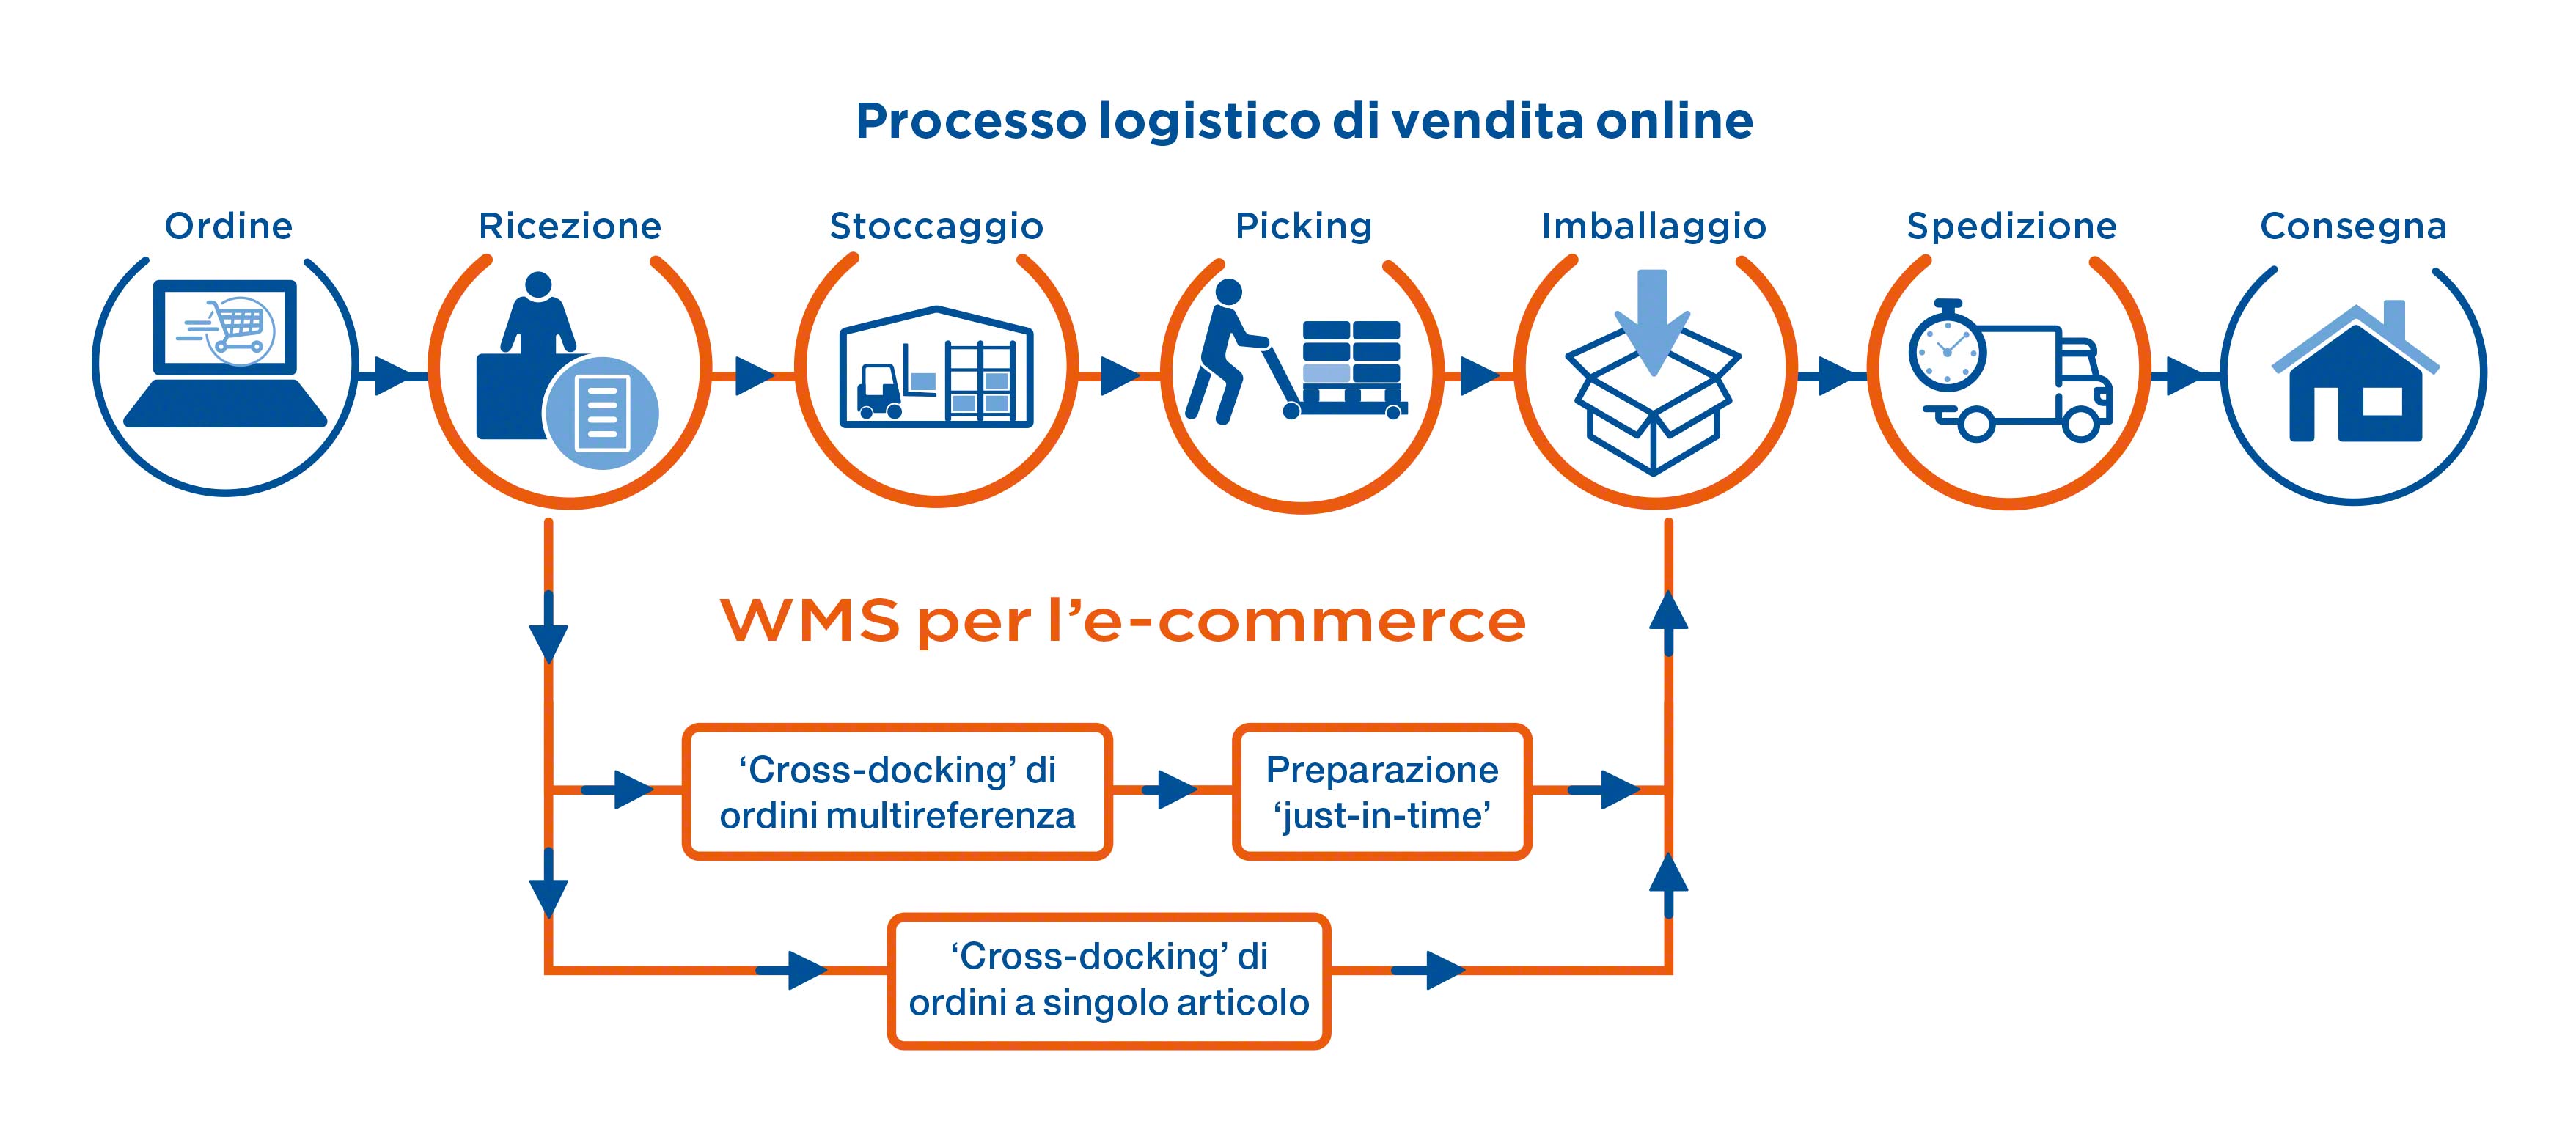 Processo logistico di vendita online